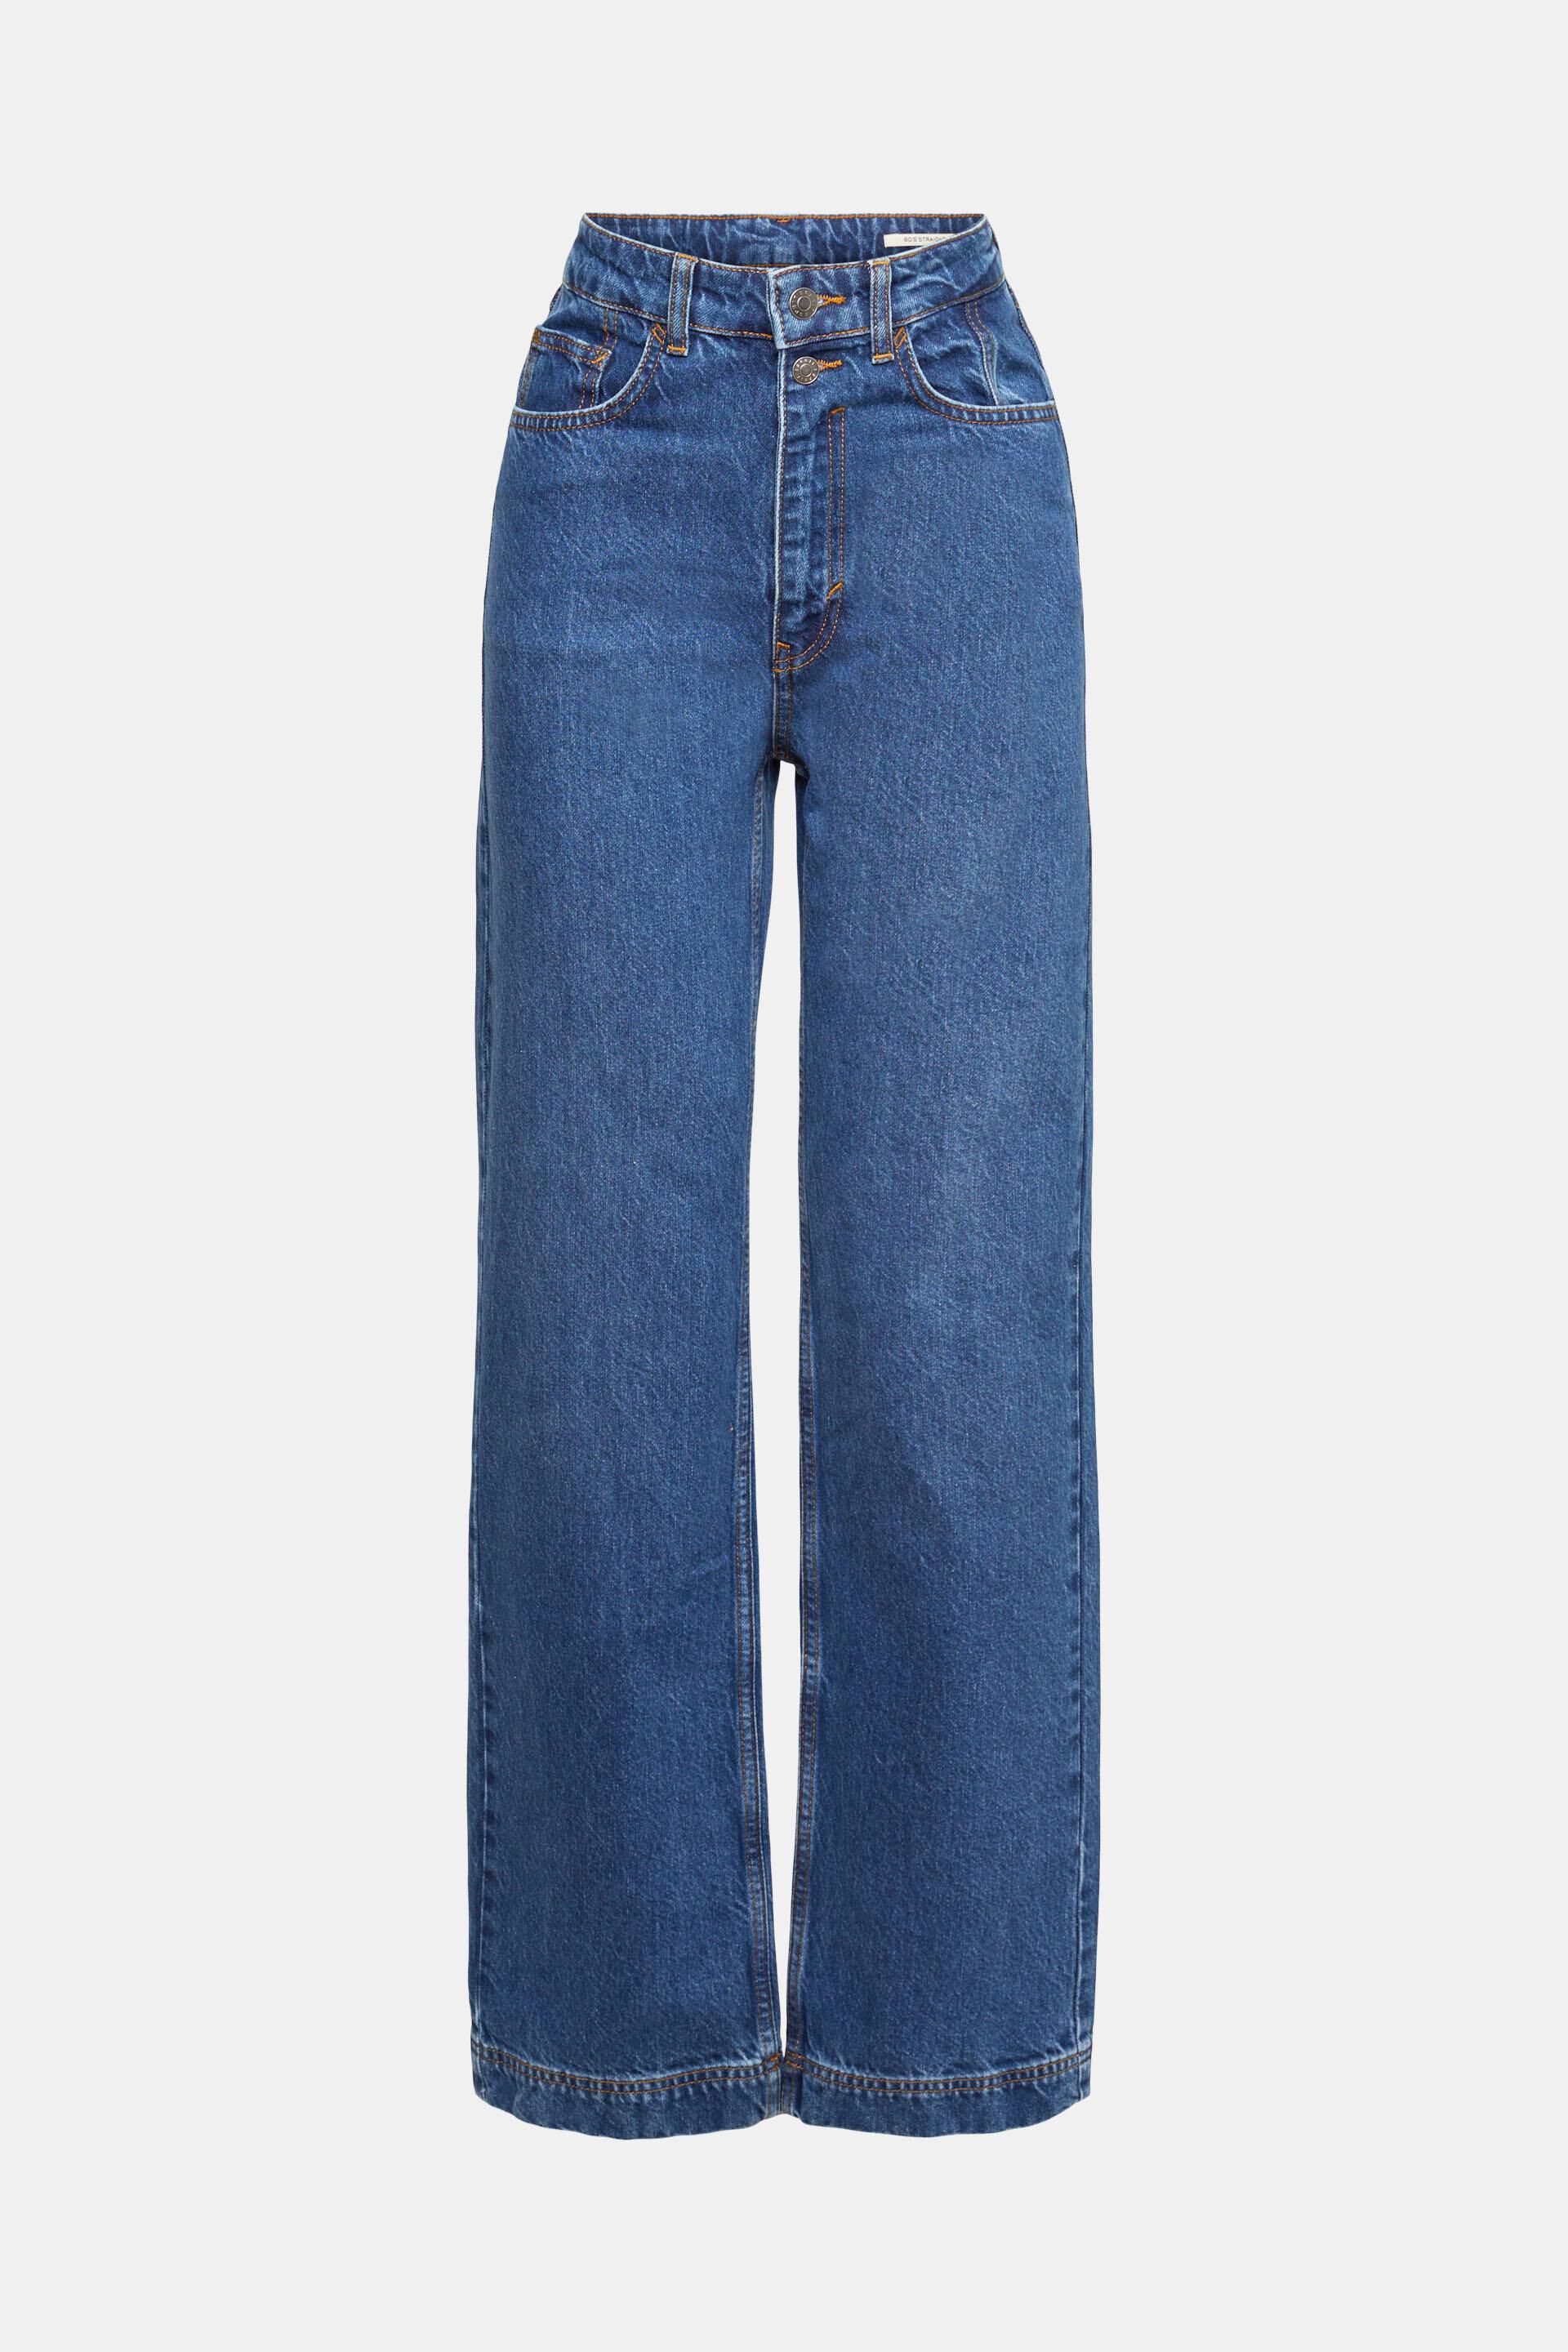 Loewe Denim High-Rise Jeans mit weitem Bein in Blau Damen Bekleidung Jeans Ausgestellte Jeans 